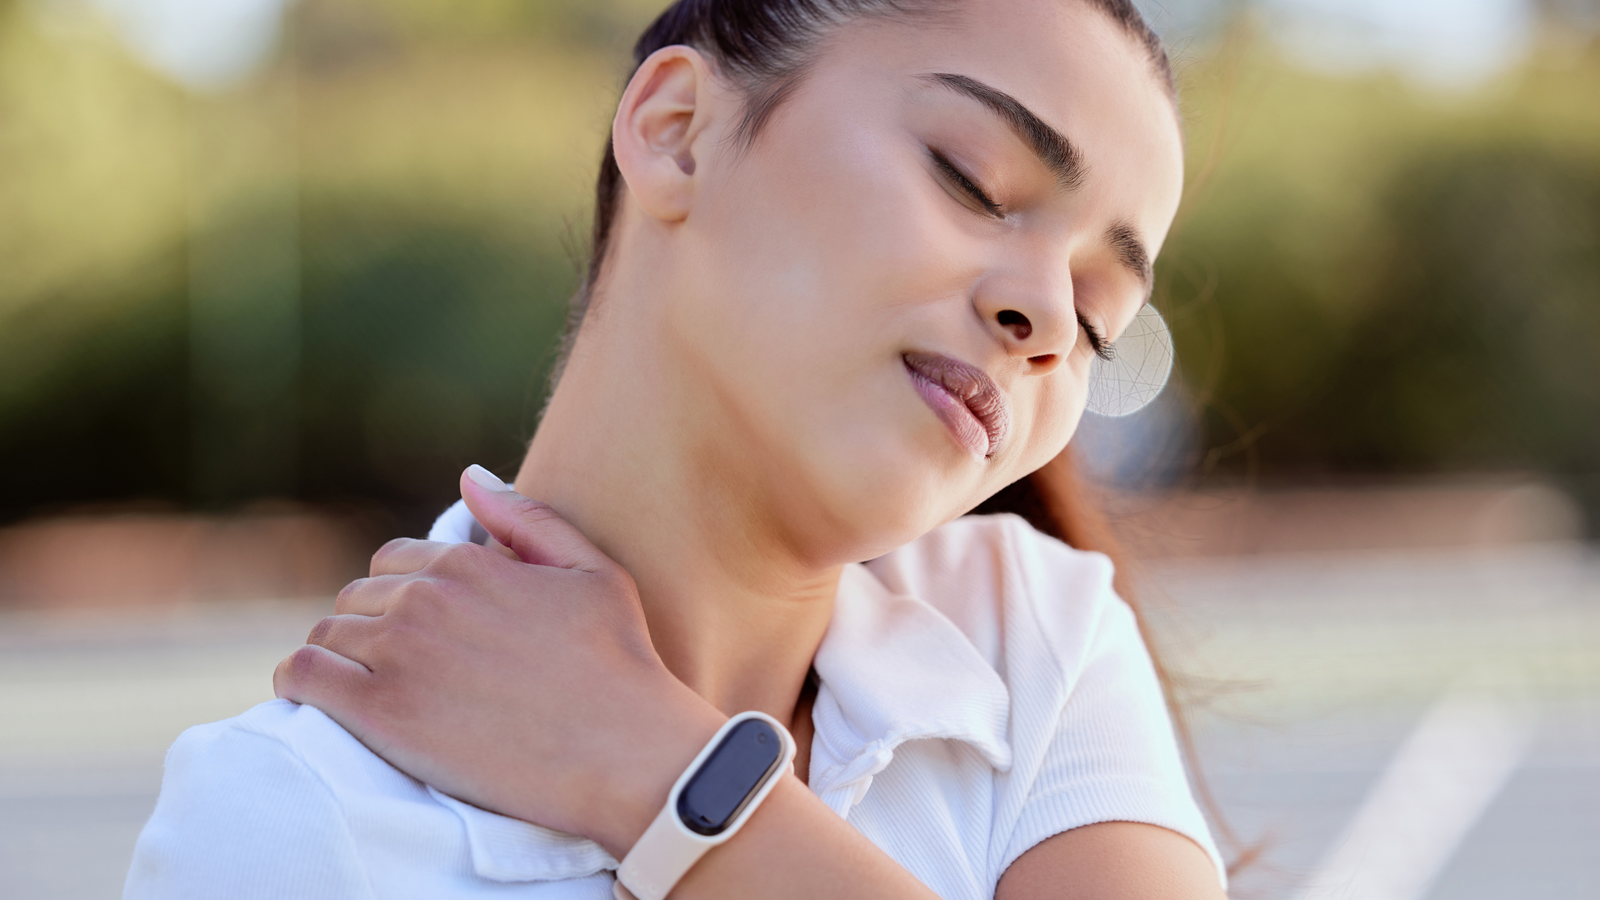 Pourquoi mon bras s'engourdit la nuit ? - MedCline France